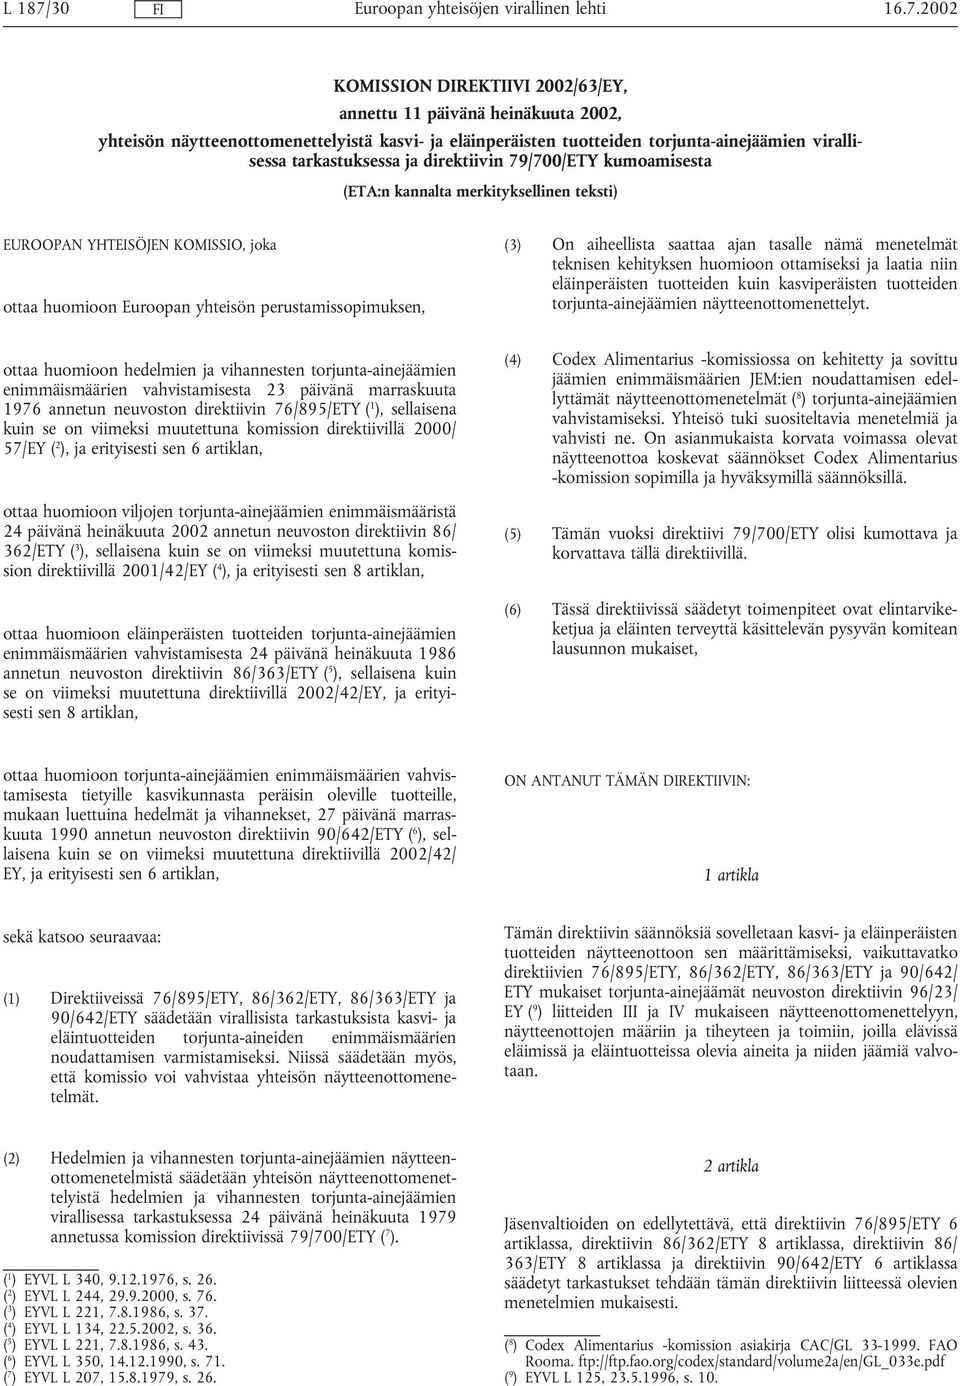 2002 KOMISSION DIREKTIIVI 2002/63/EY, annettu 11 päivänä heinäkuuta 2002, yhteisön näytteenottomenettelyistä kasvi- ja eläinperäisten tuotteiden torjunta-ainejäämien virallisessa tarkastuksessa ja